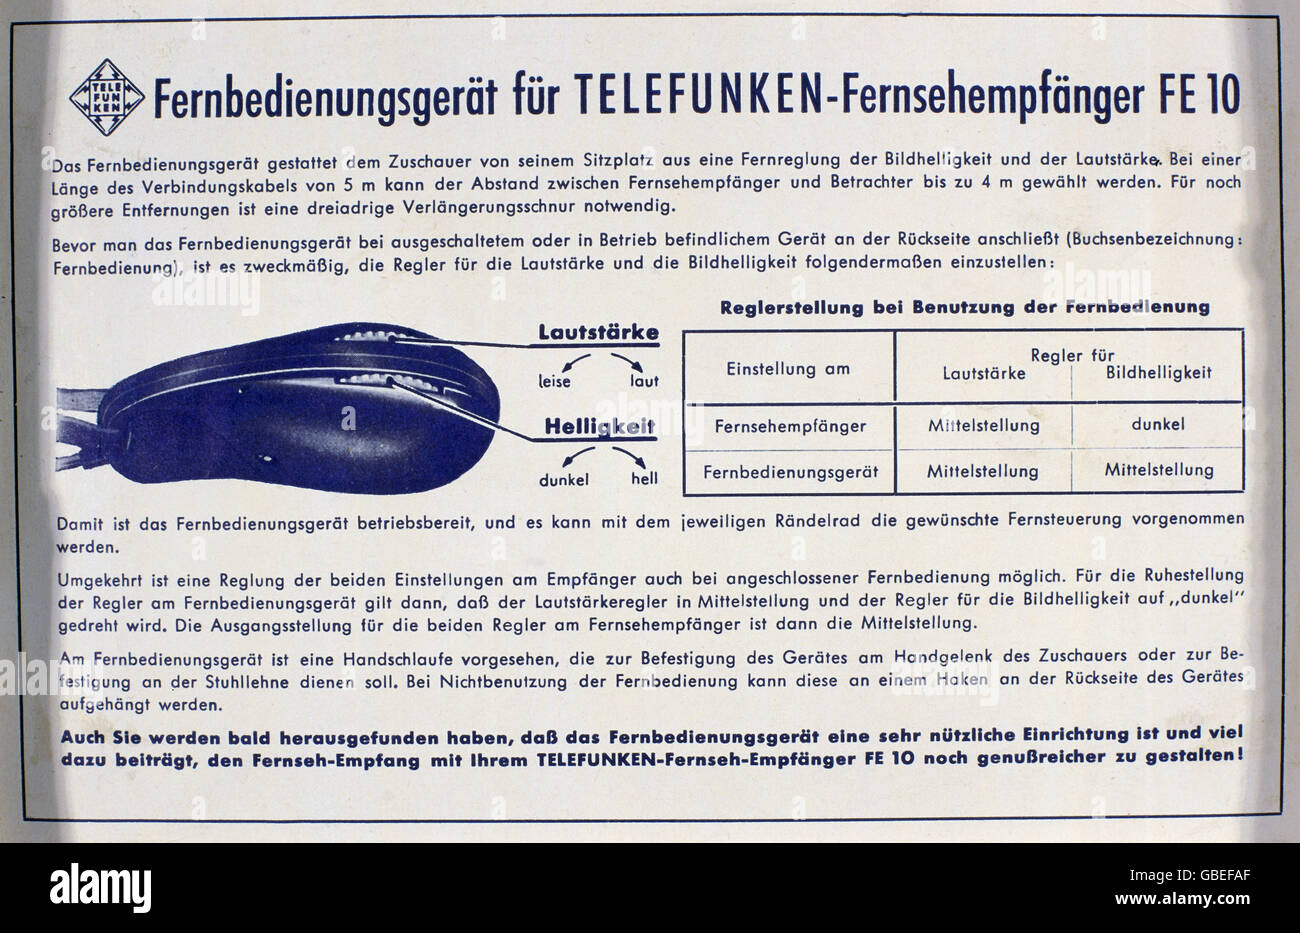 Sendung, Fernsehen, Verpackung der Telefunken Fernbedienung,  Bedienungsanleitung, 1956, Zusatzrechte-Abfertigung-nicht vorhanden  Stockfotografie - Alamy